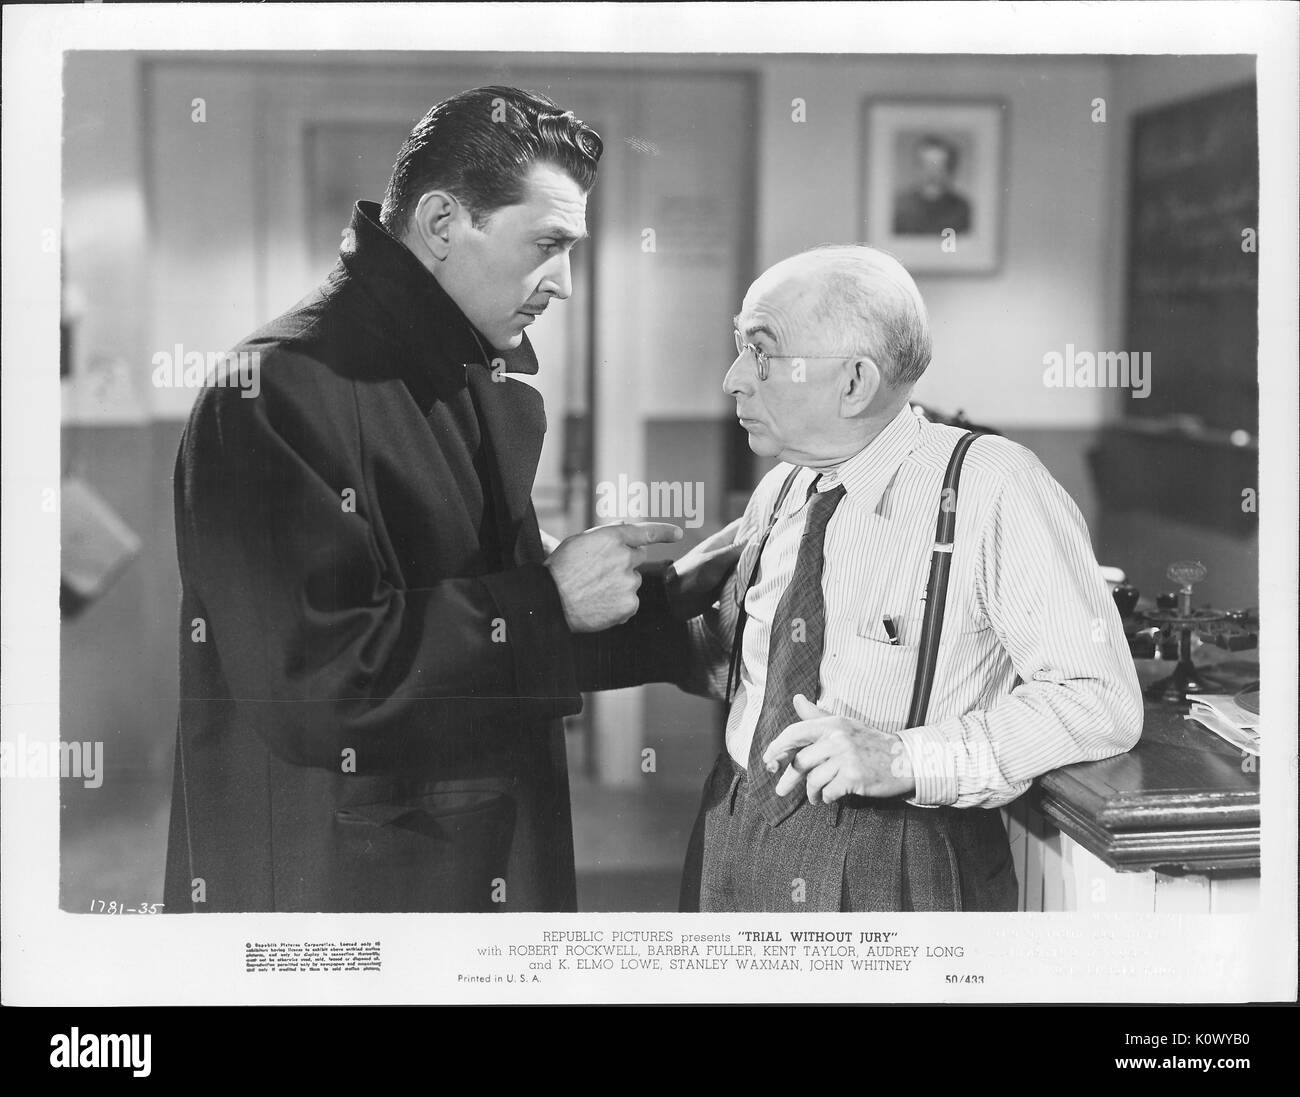 Encore un film de scène "Procès sans jury' (1950) film Mystère Photos  République, montrant un bel homme en costume sombre qui semble squatter  réprimandant un cigare-fumeurs vieux à lunettes homme portant un